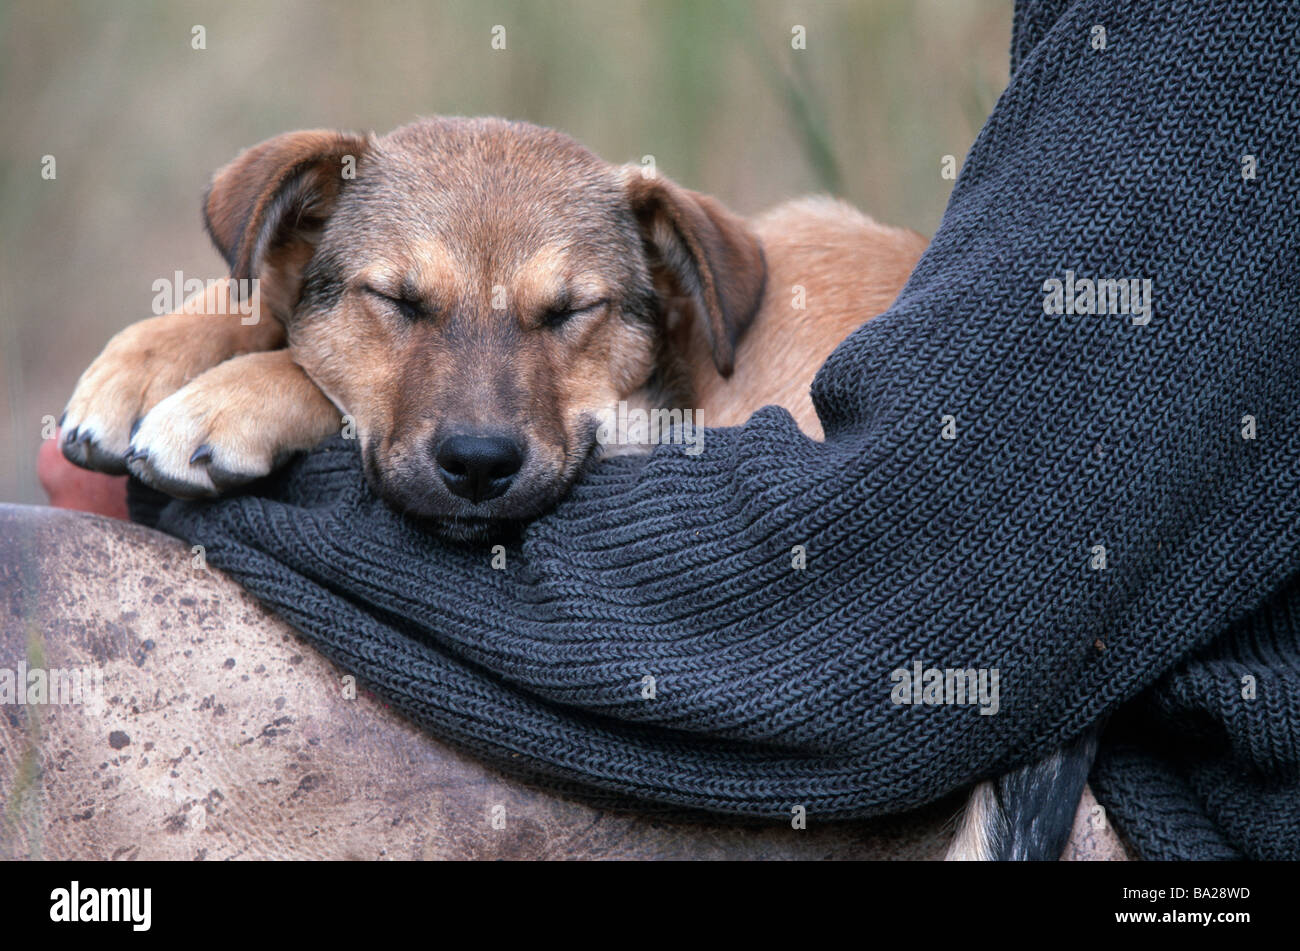 Cowboy sitzt Hund junge Detail hält Mann Seil-Pullover Chaps ist Lederbekleidung Tier Säugetier half-breed-Hund Welpen wachen Stockfoto